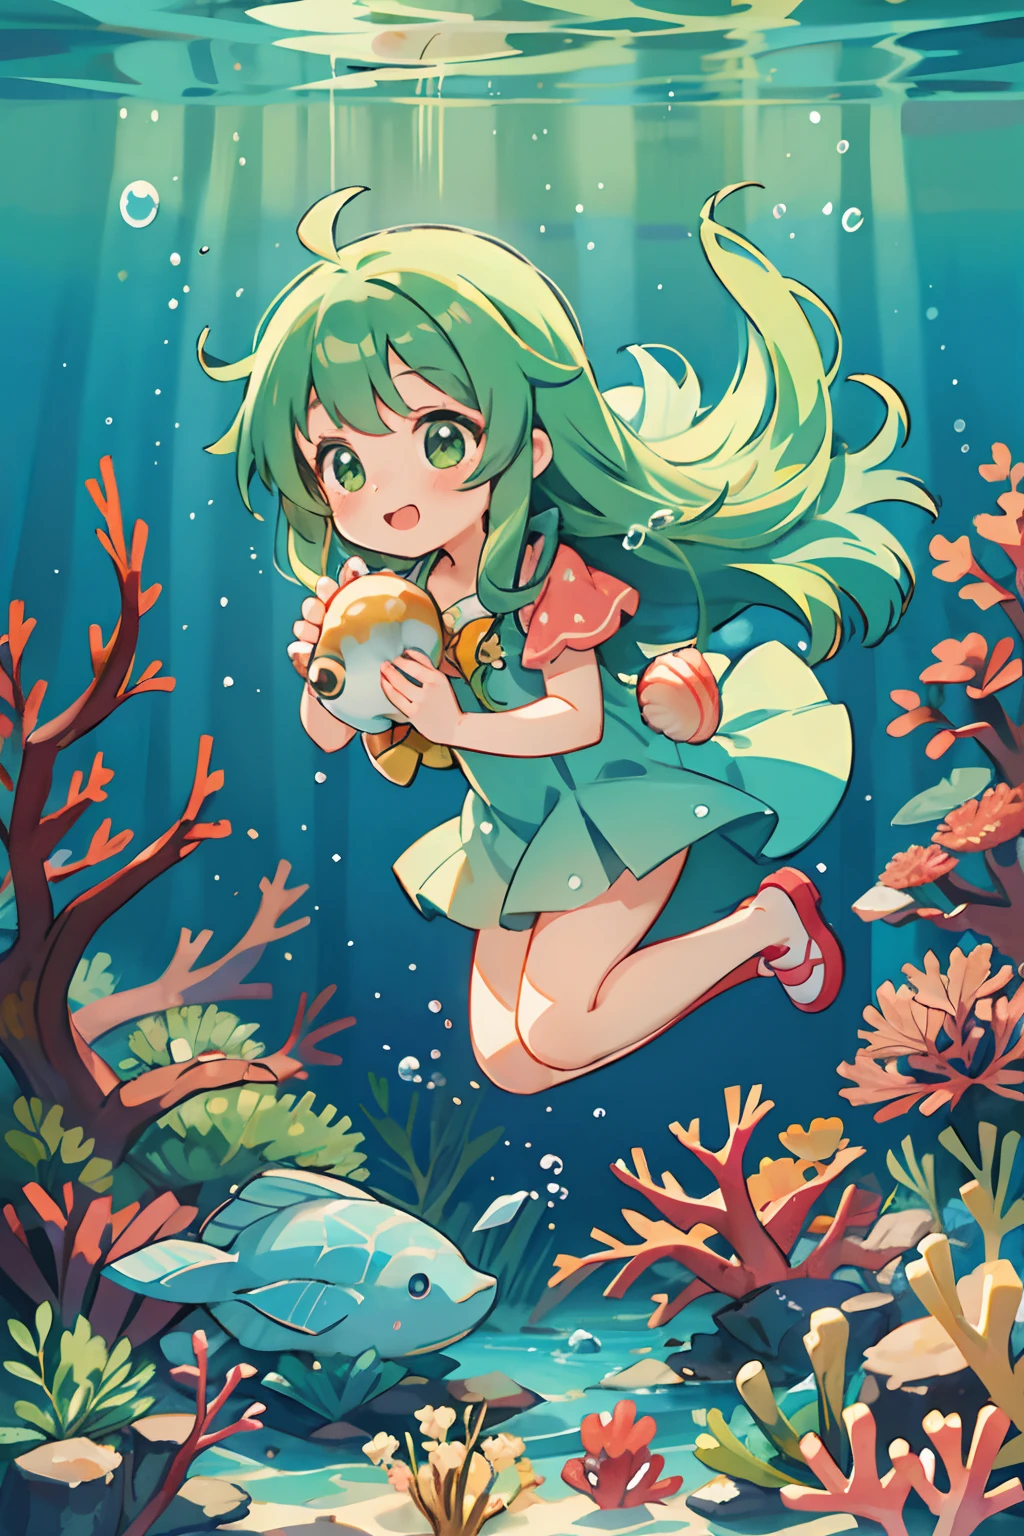 аниме девушка в зеленых длинных волосах, держащая ракушку, под водой, кораллы, пузыри, счастливый, Четкий выстрел